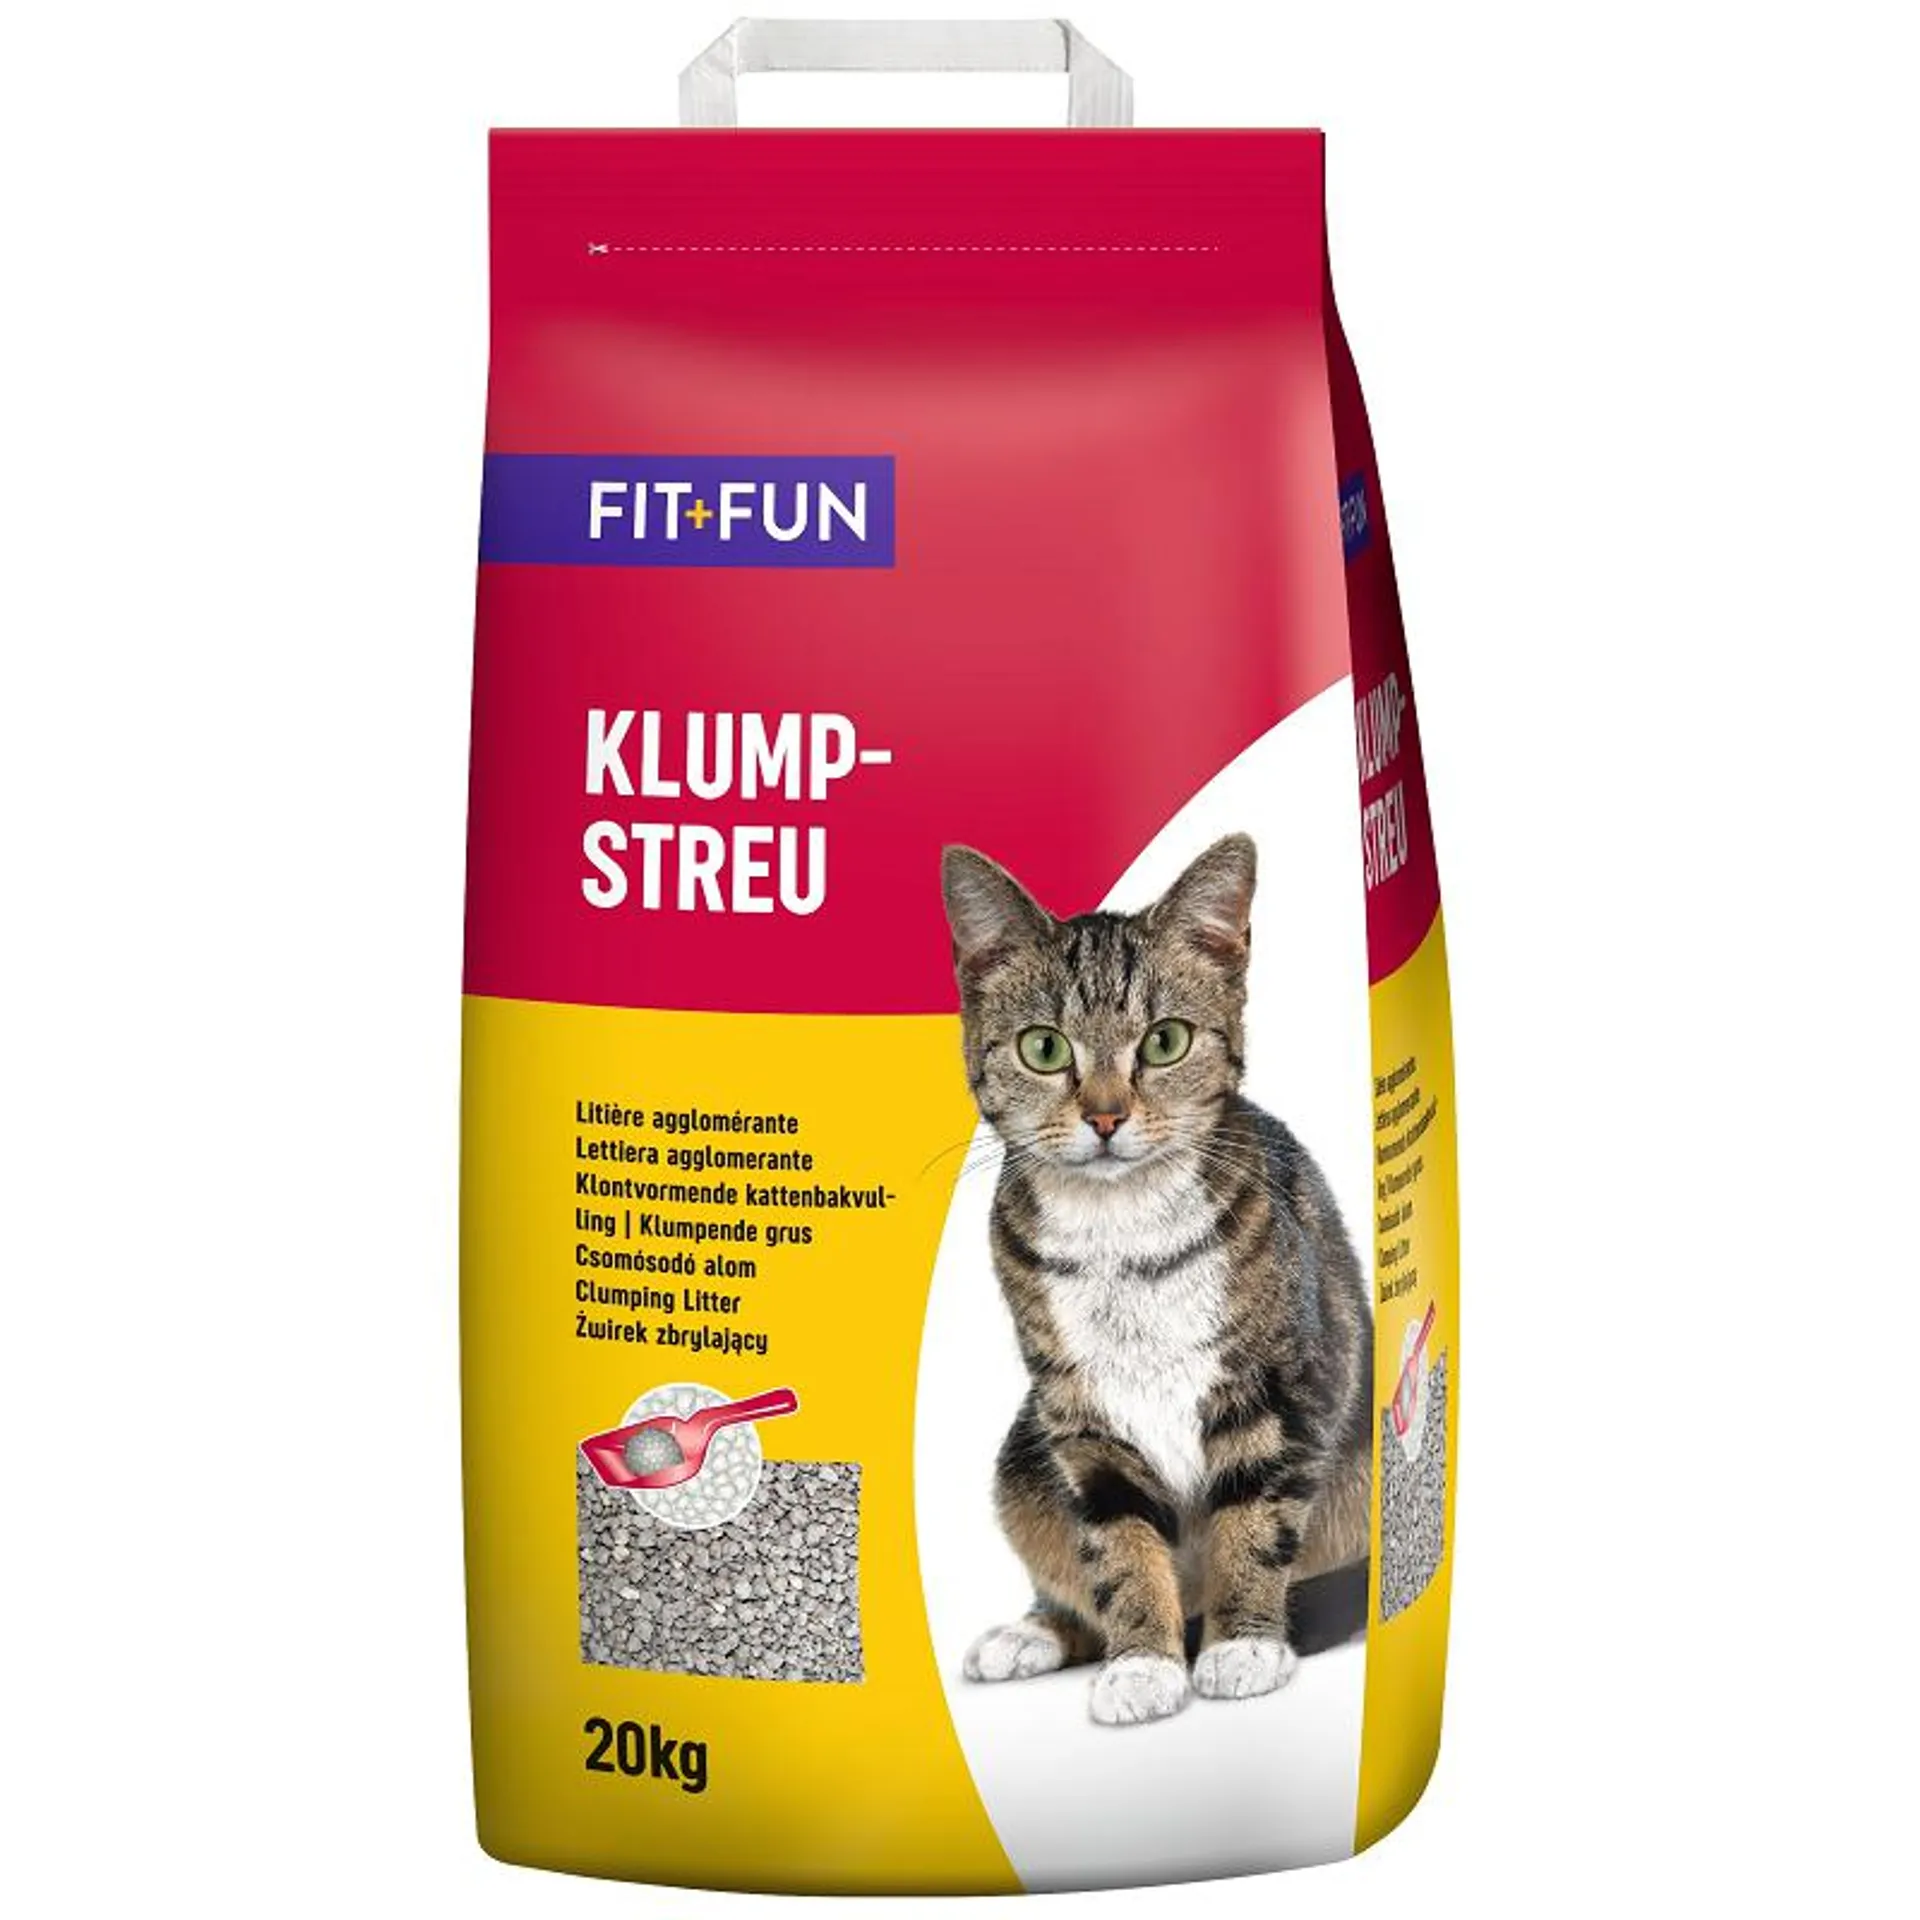 FIT+FUN Bioclean cat litter